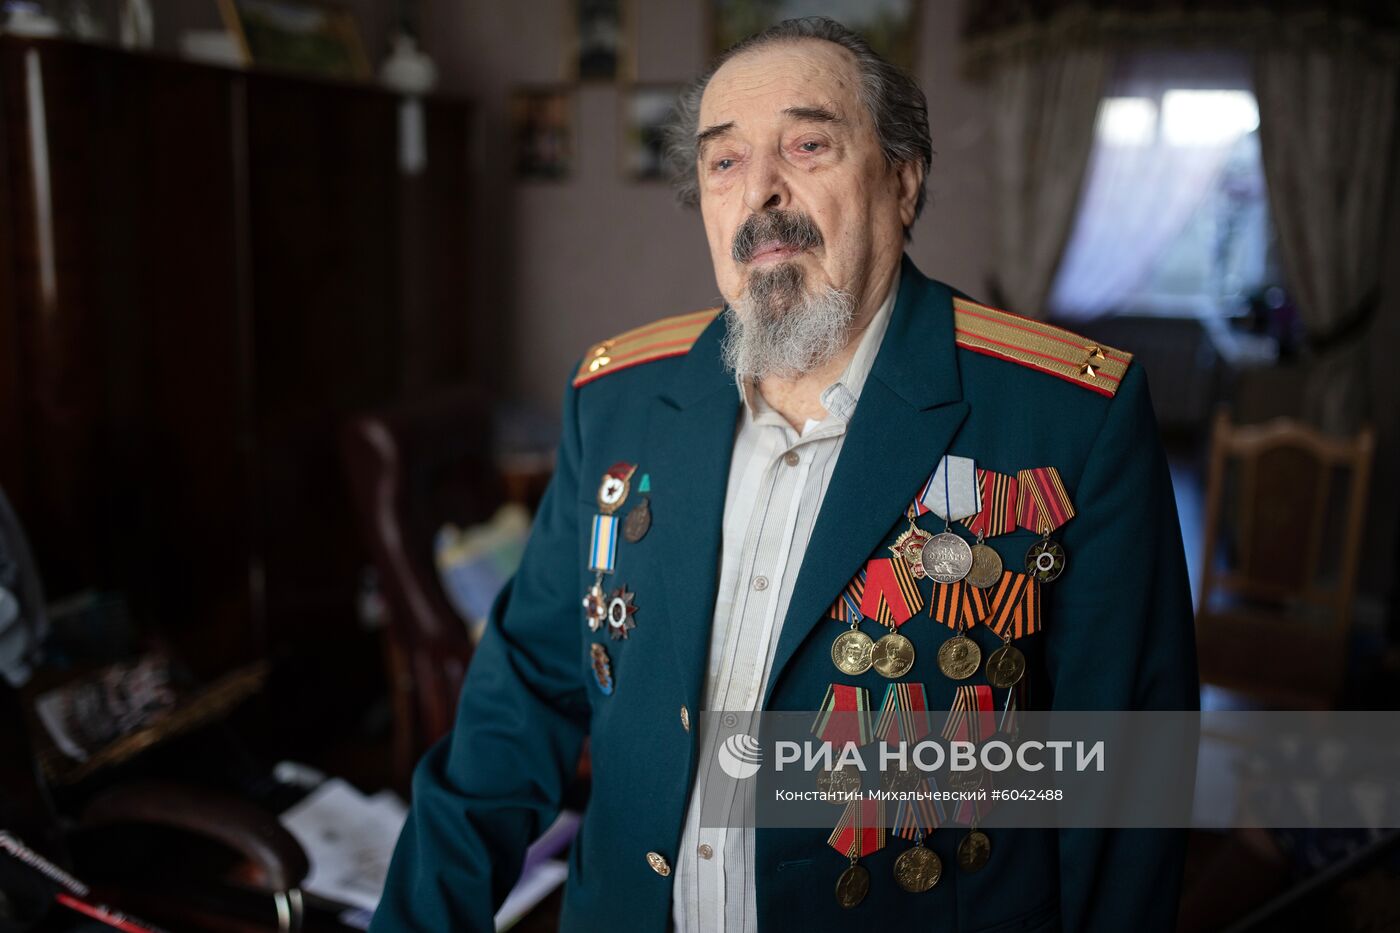 Ветеран Великой Отечественной войны М. А. Кузнецов